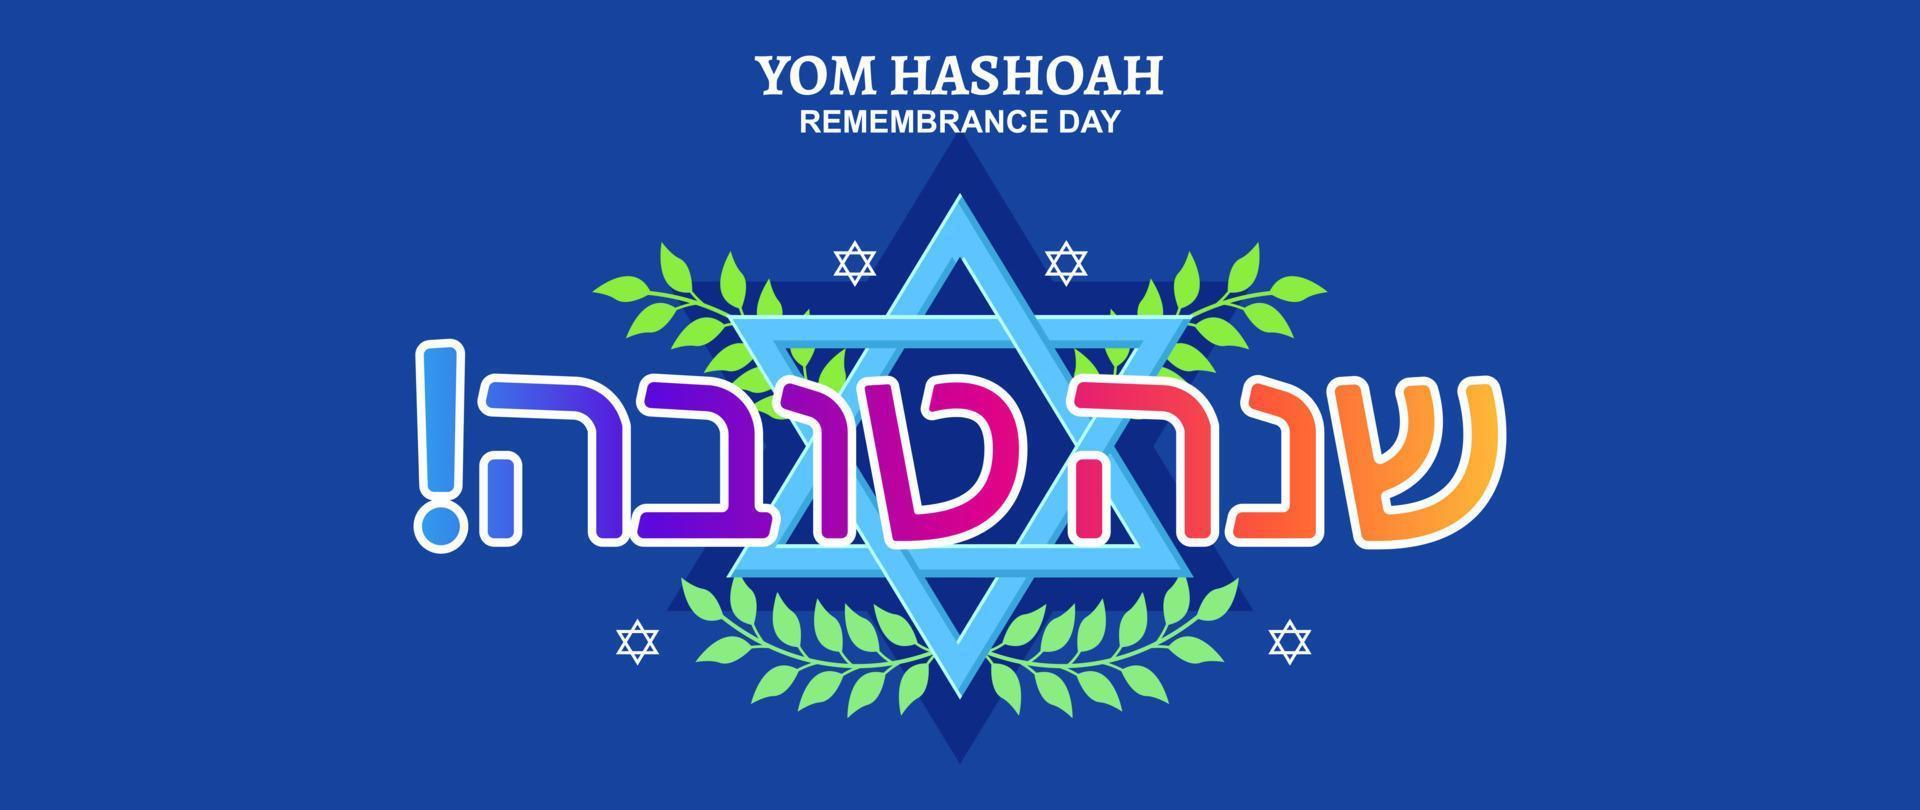 yom hashoah remembranza día letras bandera ilustración vector